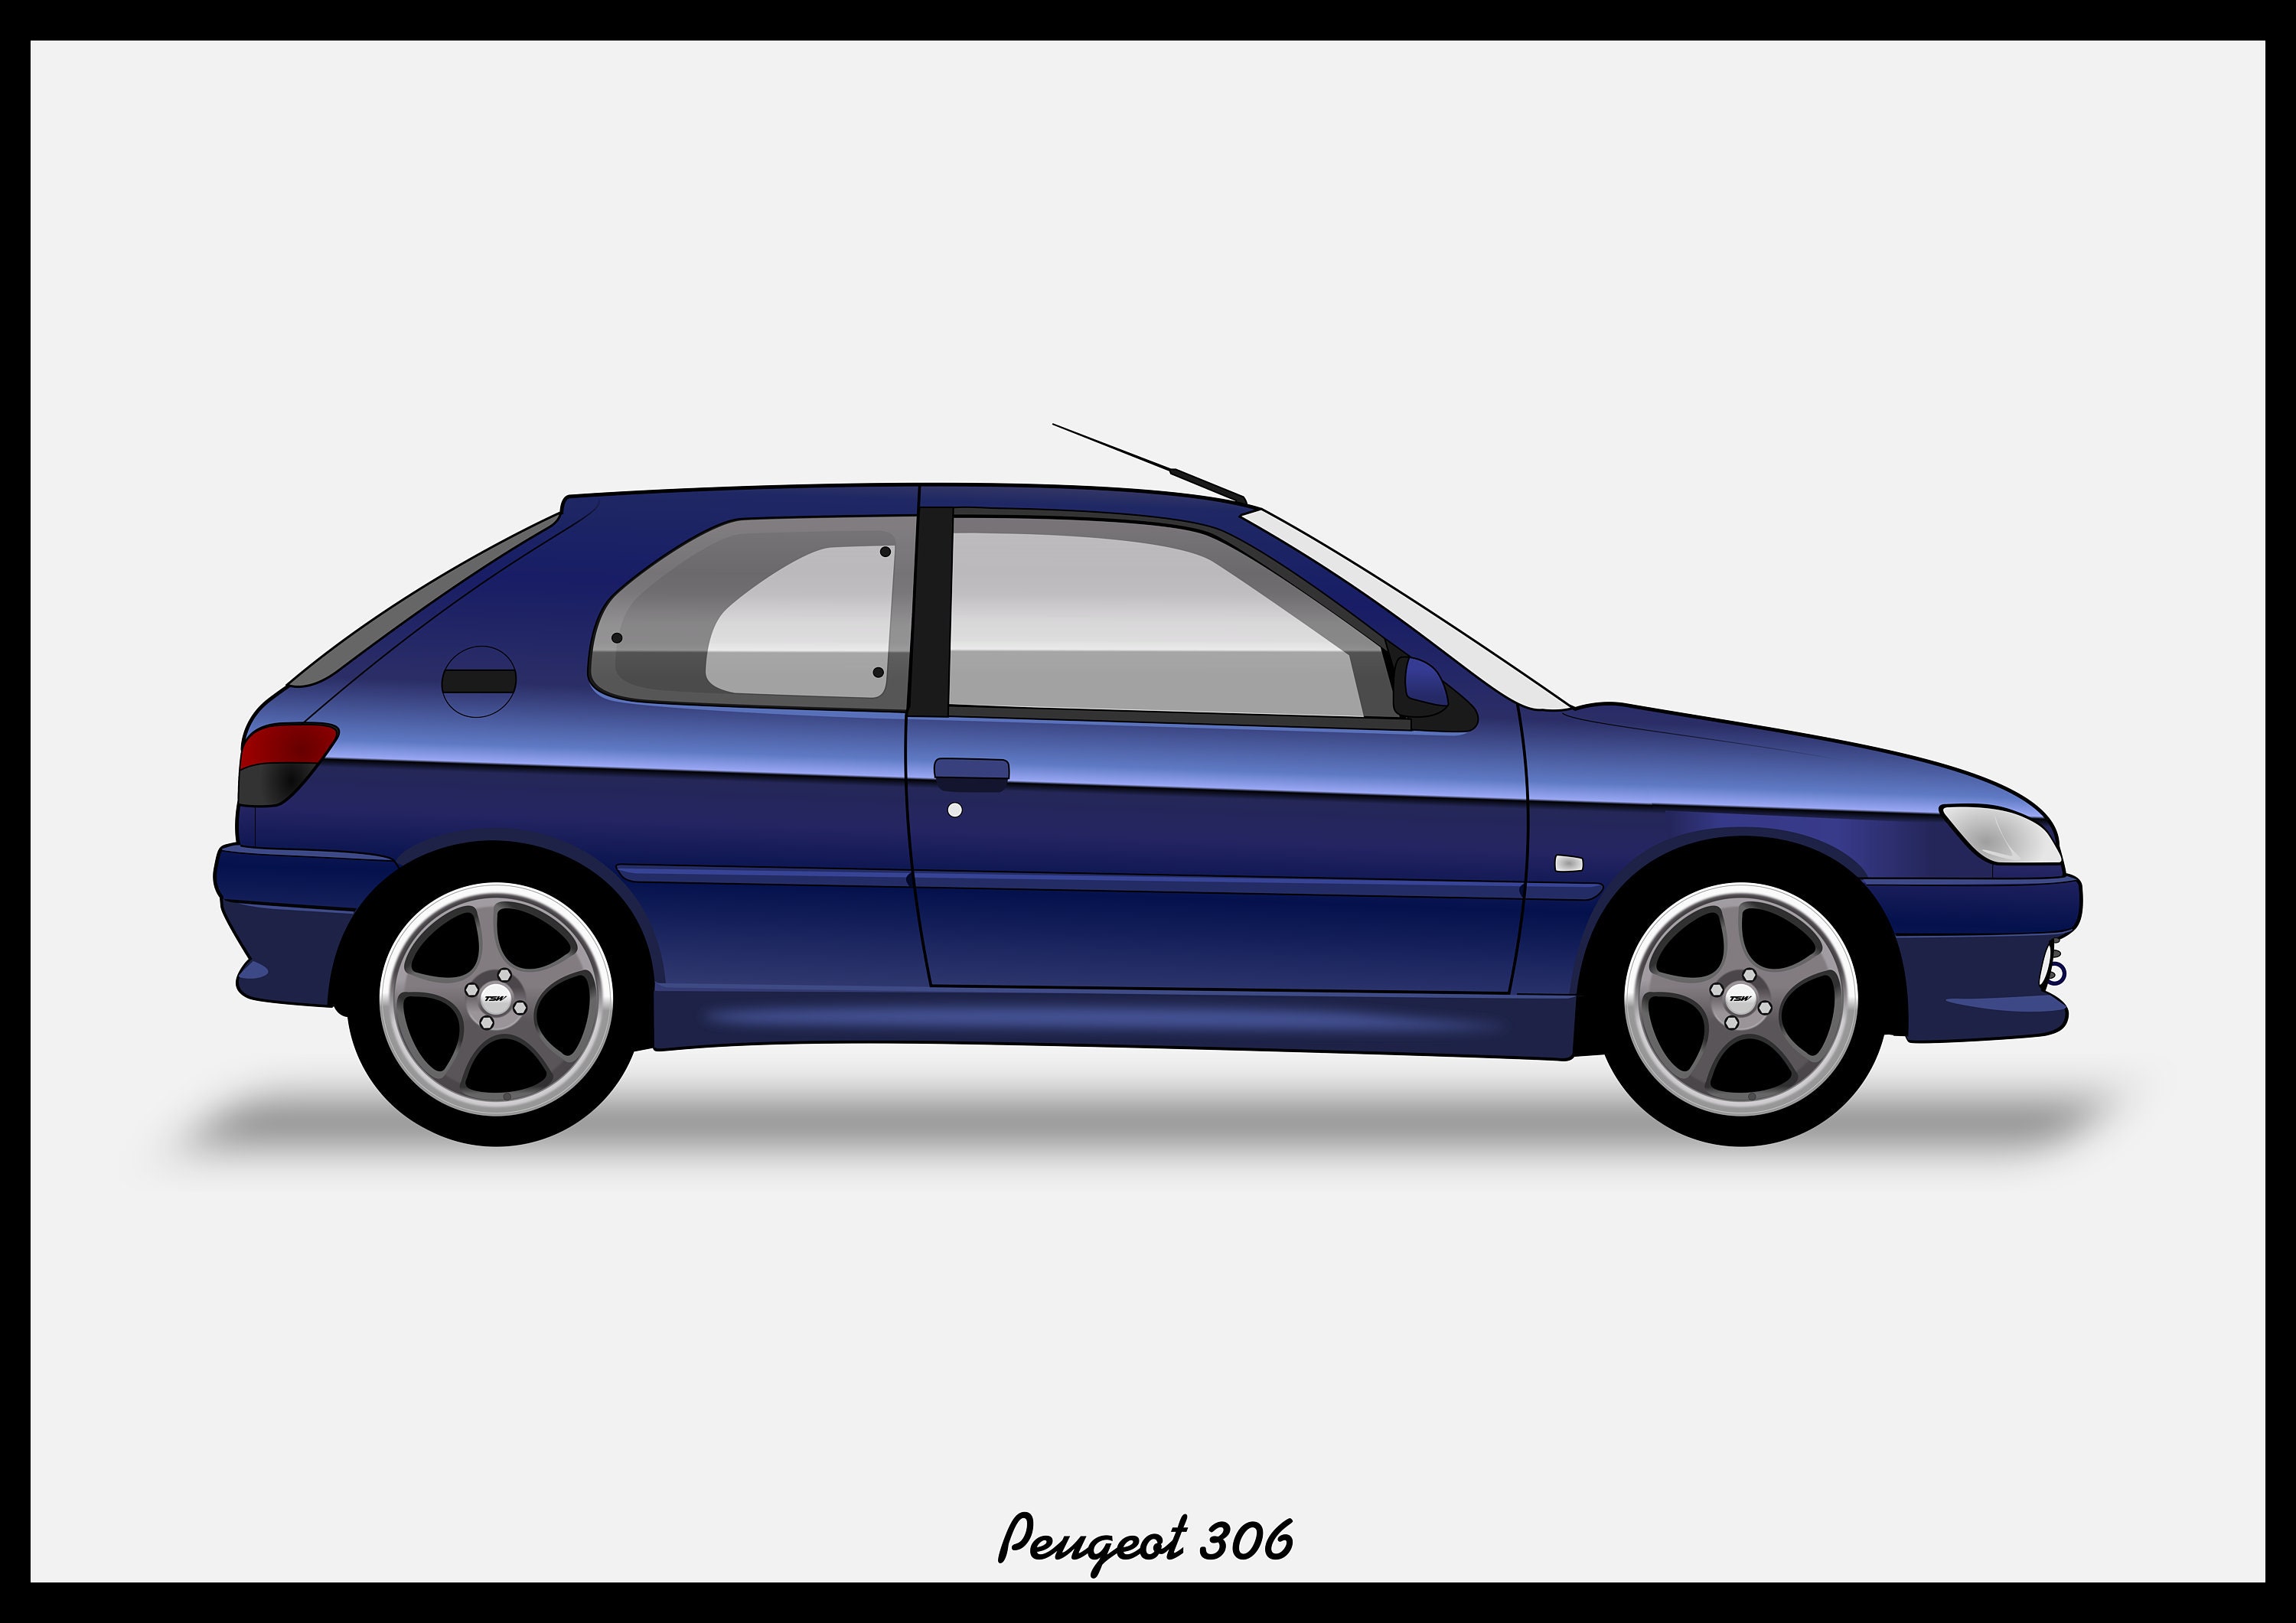 83 Peugeot 306 Images, Stock Photos, 3D objects, & Vectors